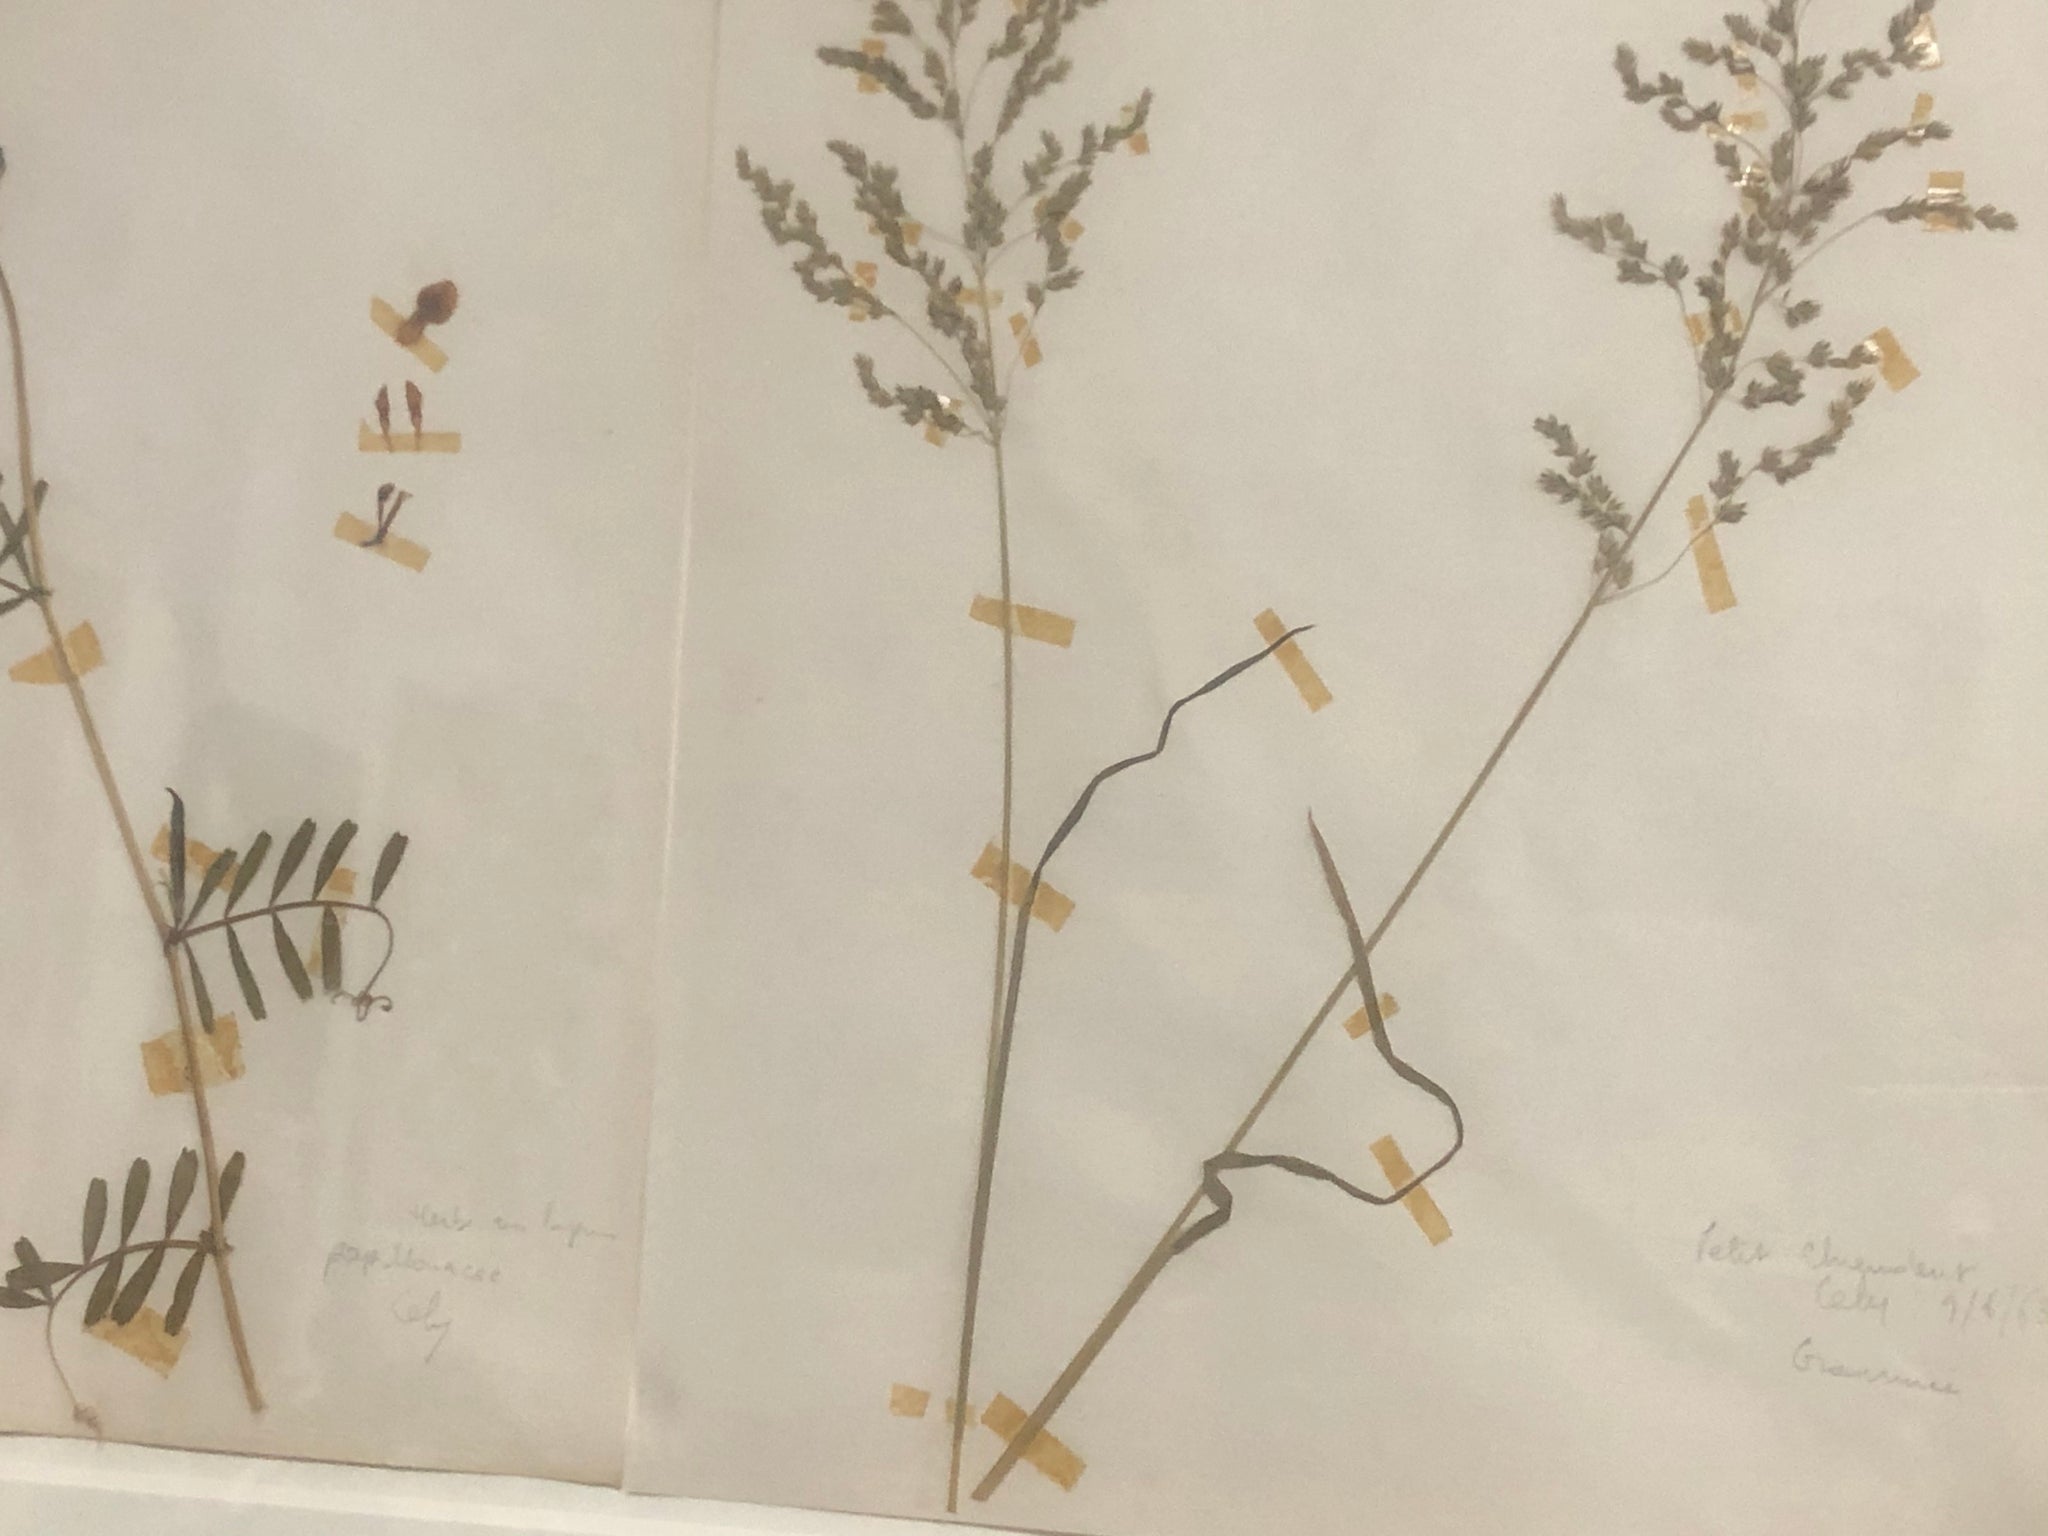 Botanical specimens in antique frame